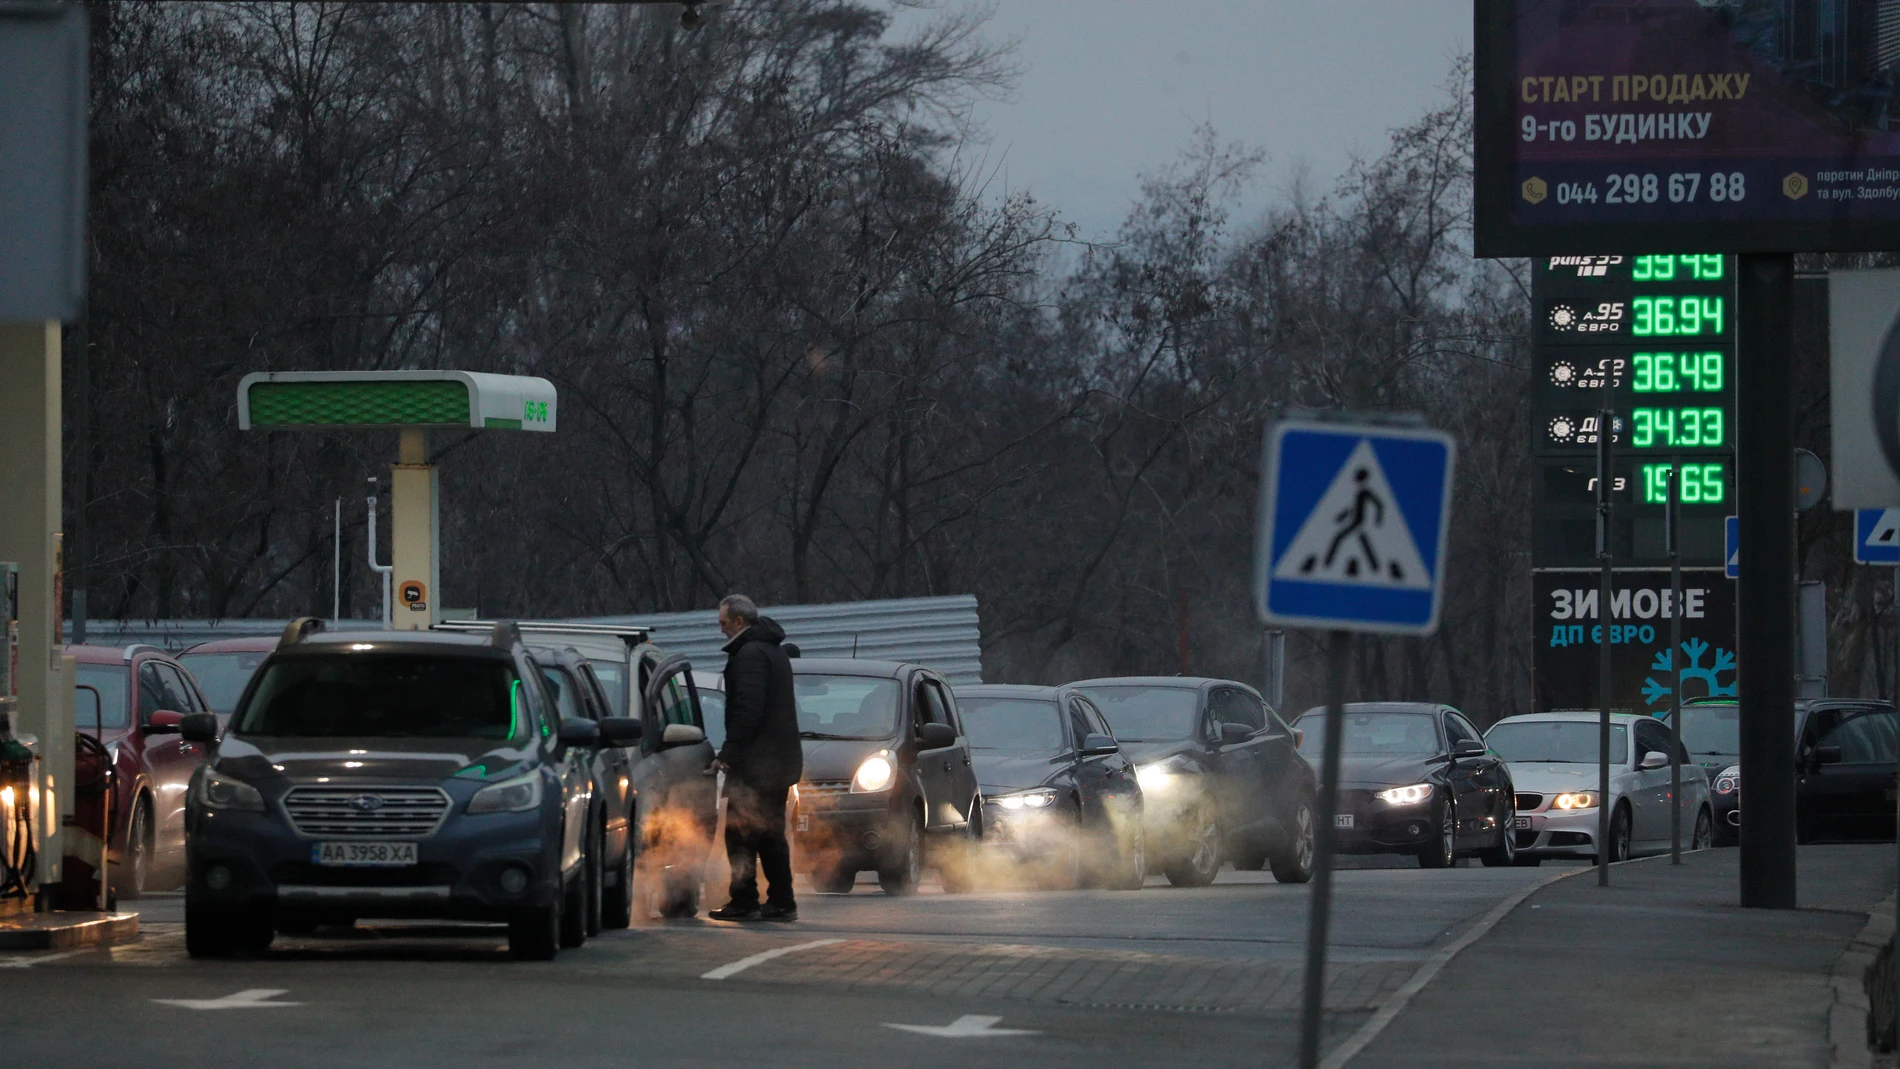 Largas colas en las gasolineras ucranianas tras el estallido de la guerra con Rusia